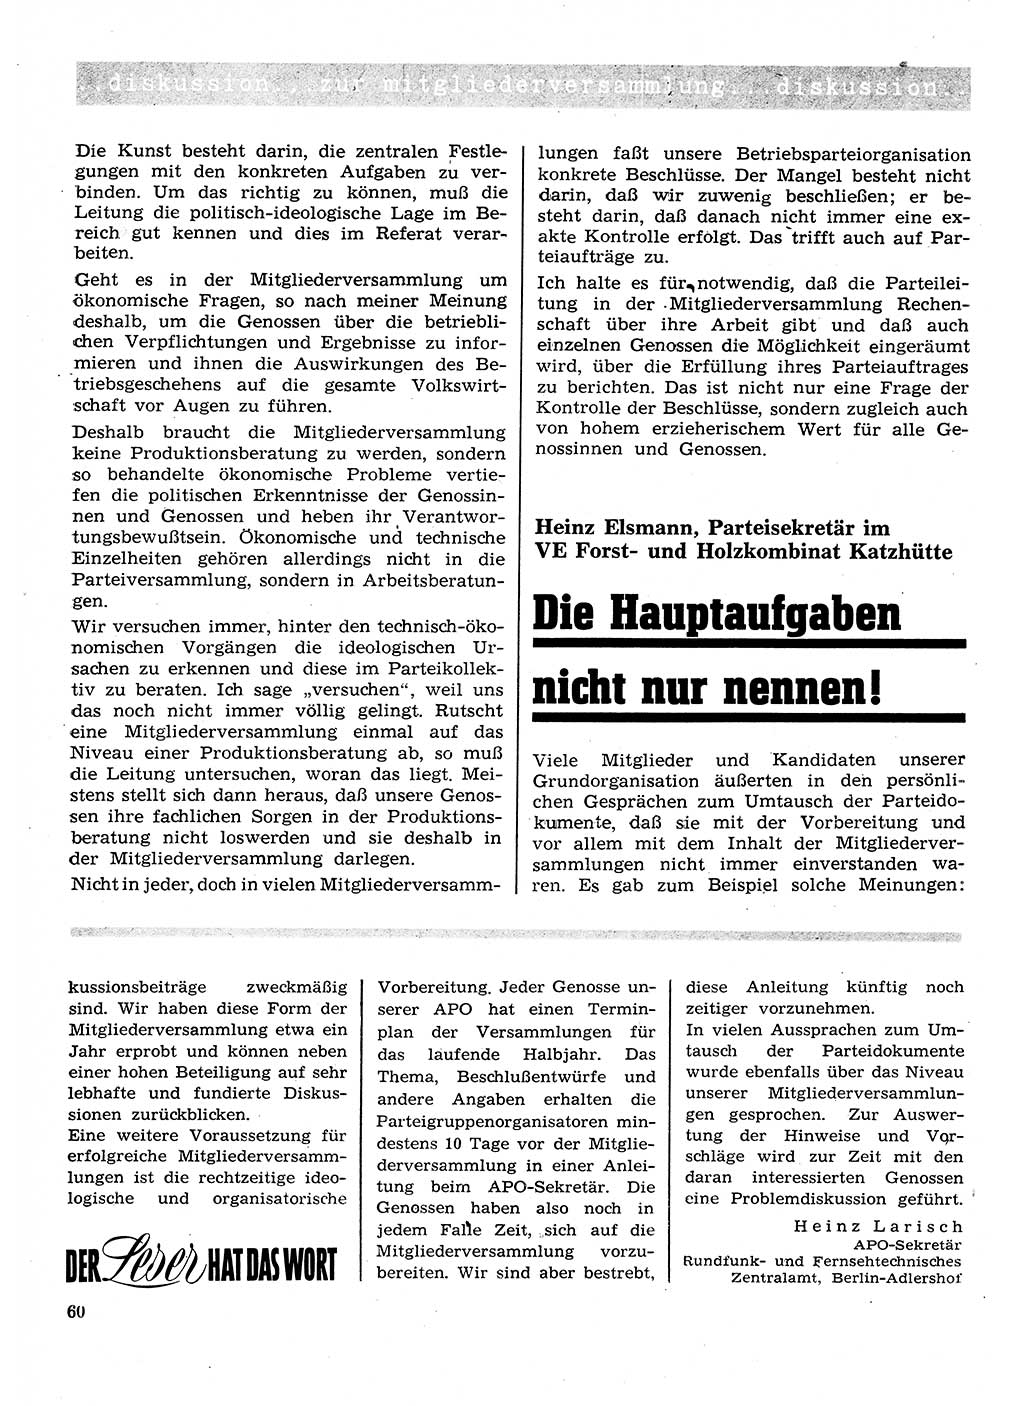 Neuer Weg (NW), Organ des Zentralkomitees (ZK) der SED (Sozialistische Einheitspartei Deutschlands) für Fragen des Parteilebens, 26. Jahrgang [Deutsche Demokratische Republik (DDR)] 1971, Seite 60 (NW ZK SED DDR 1971, S. 60)